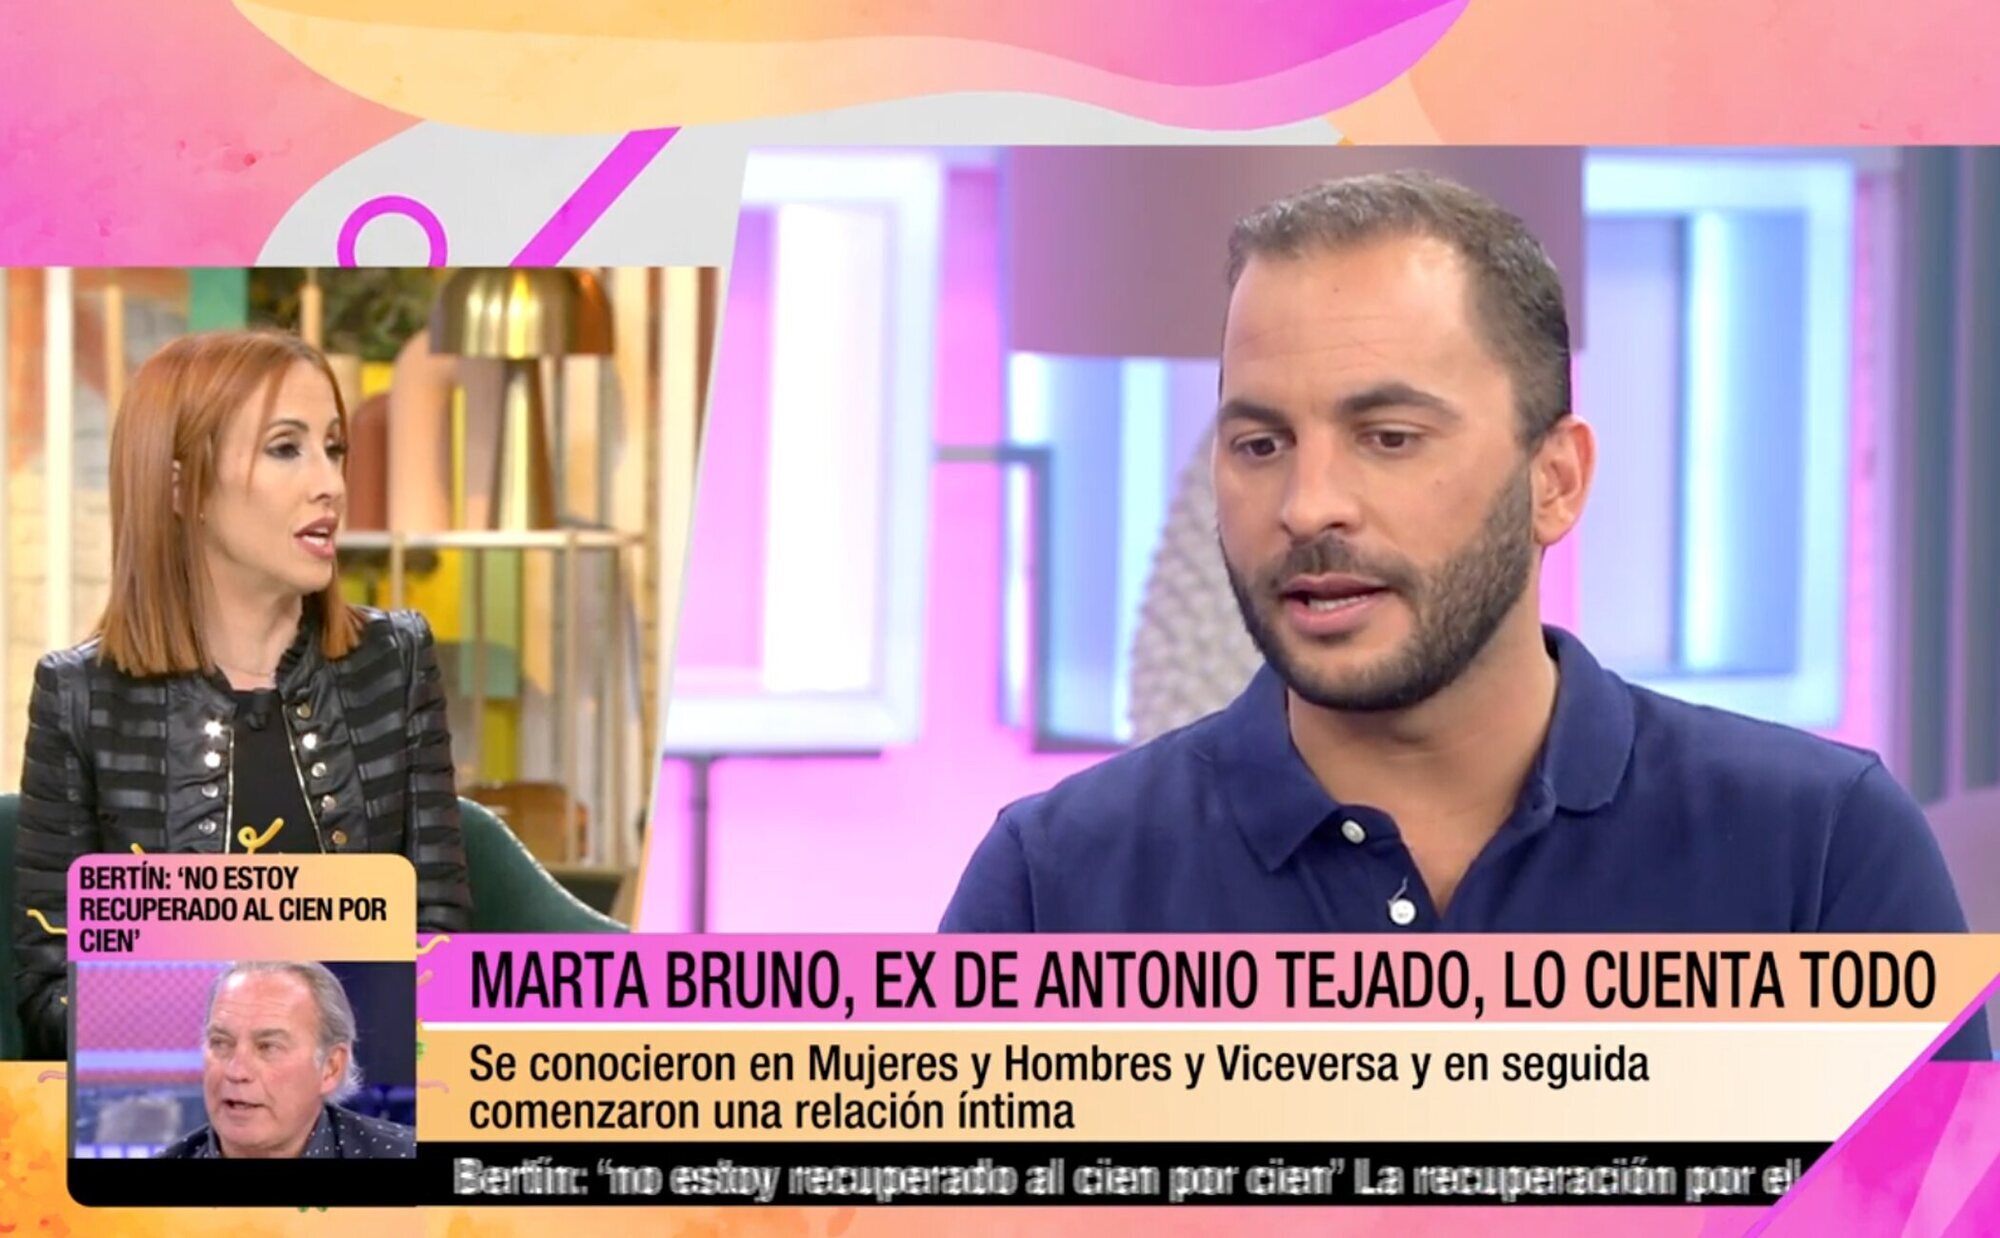 Habla Marta Bruno, otra ex de Antonio Tejado, tras su detención: "Si realmente lo conoces no te sorprende"